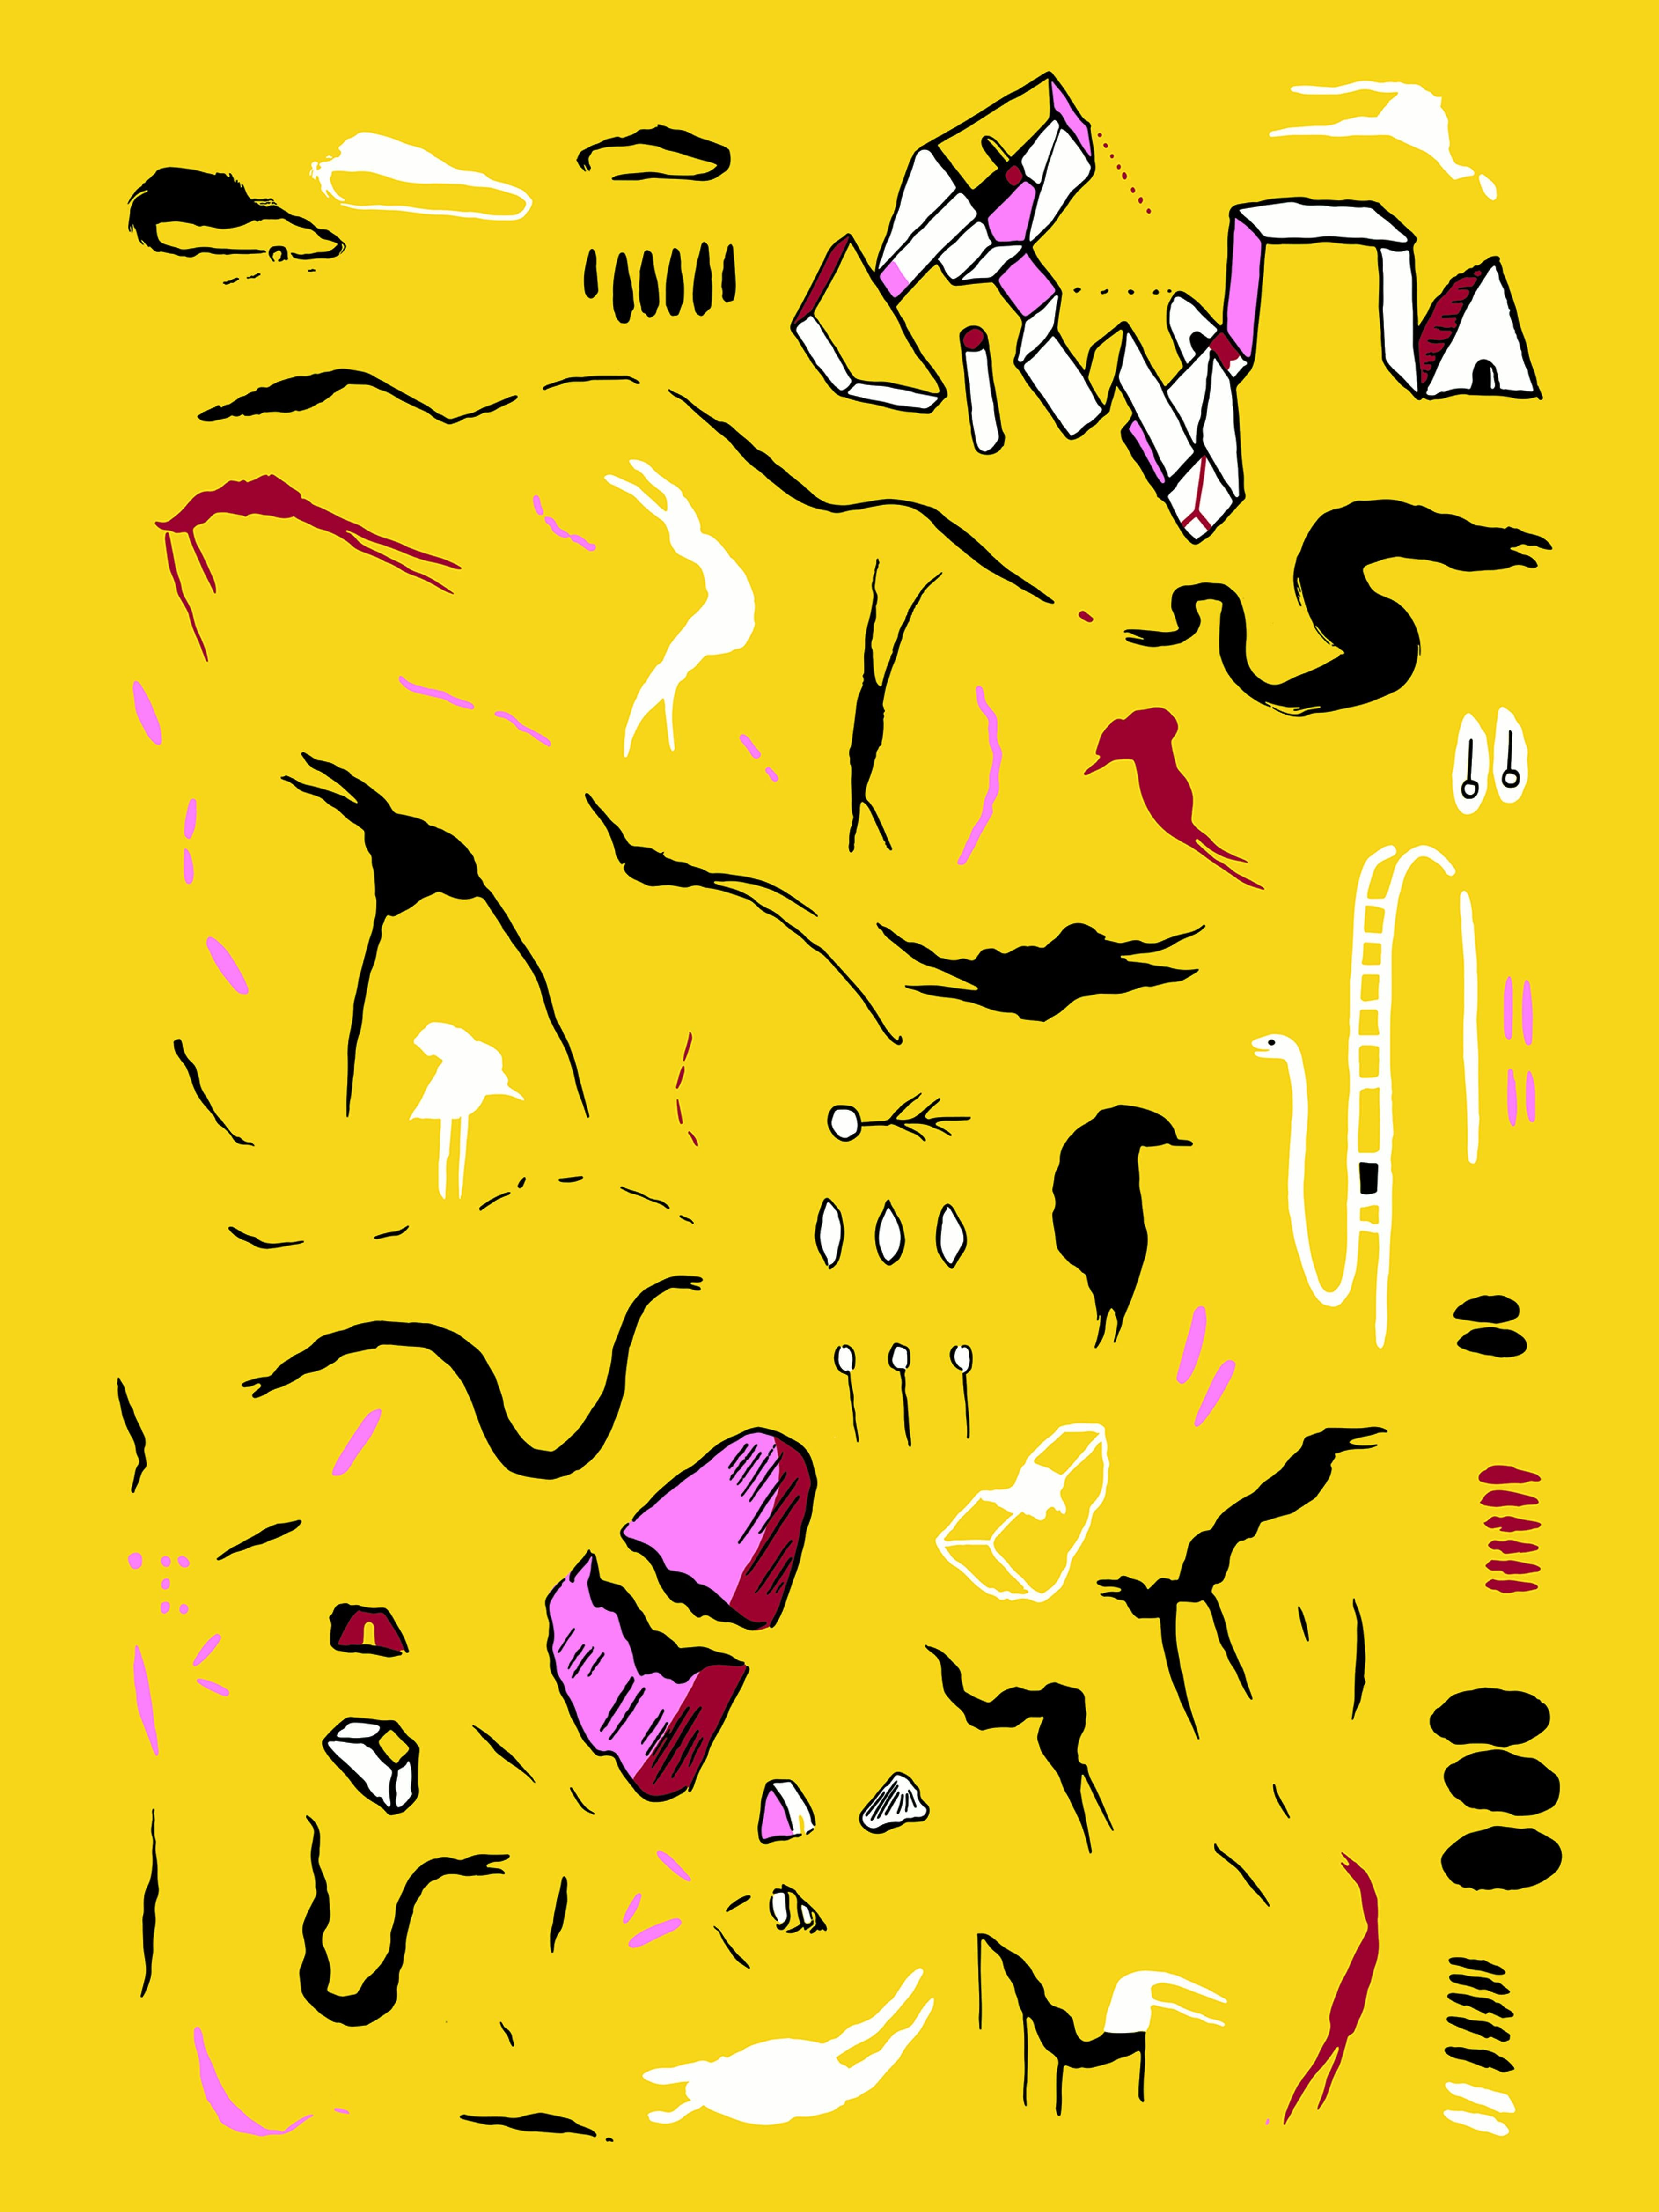 Figurative Print Alejandra España  - "Ver voces II" sérigraphie surréaliste contemporaine jaune avec feuille d'argent.